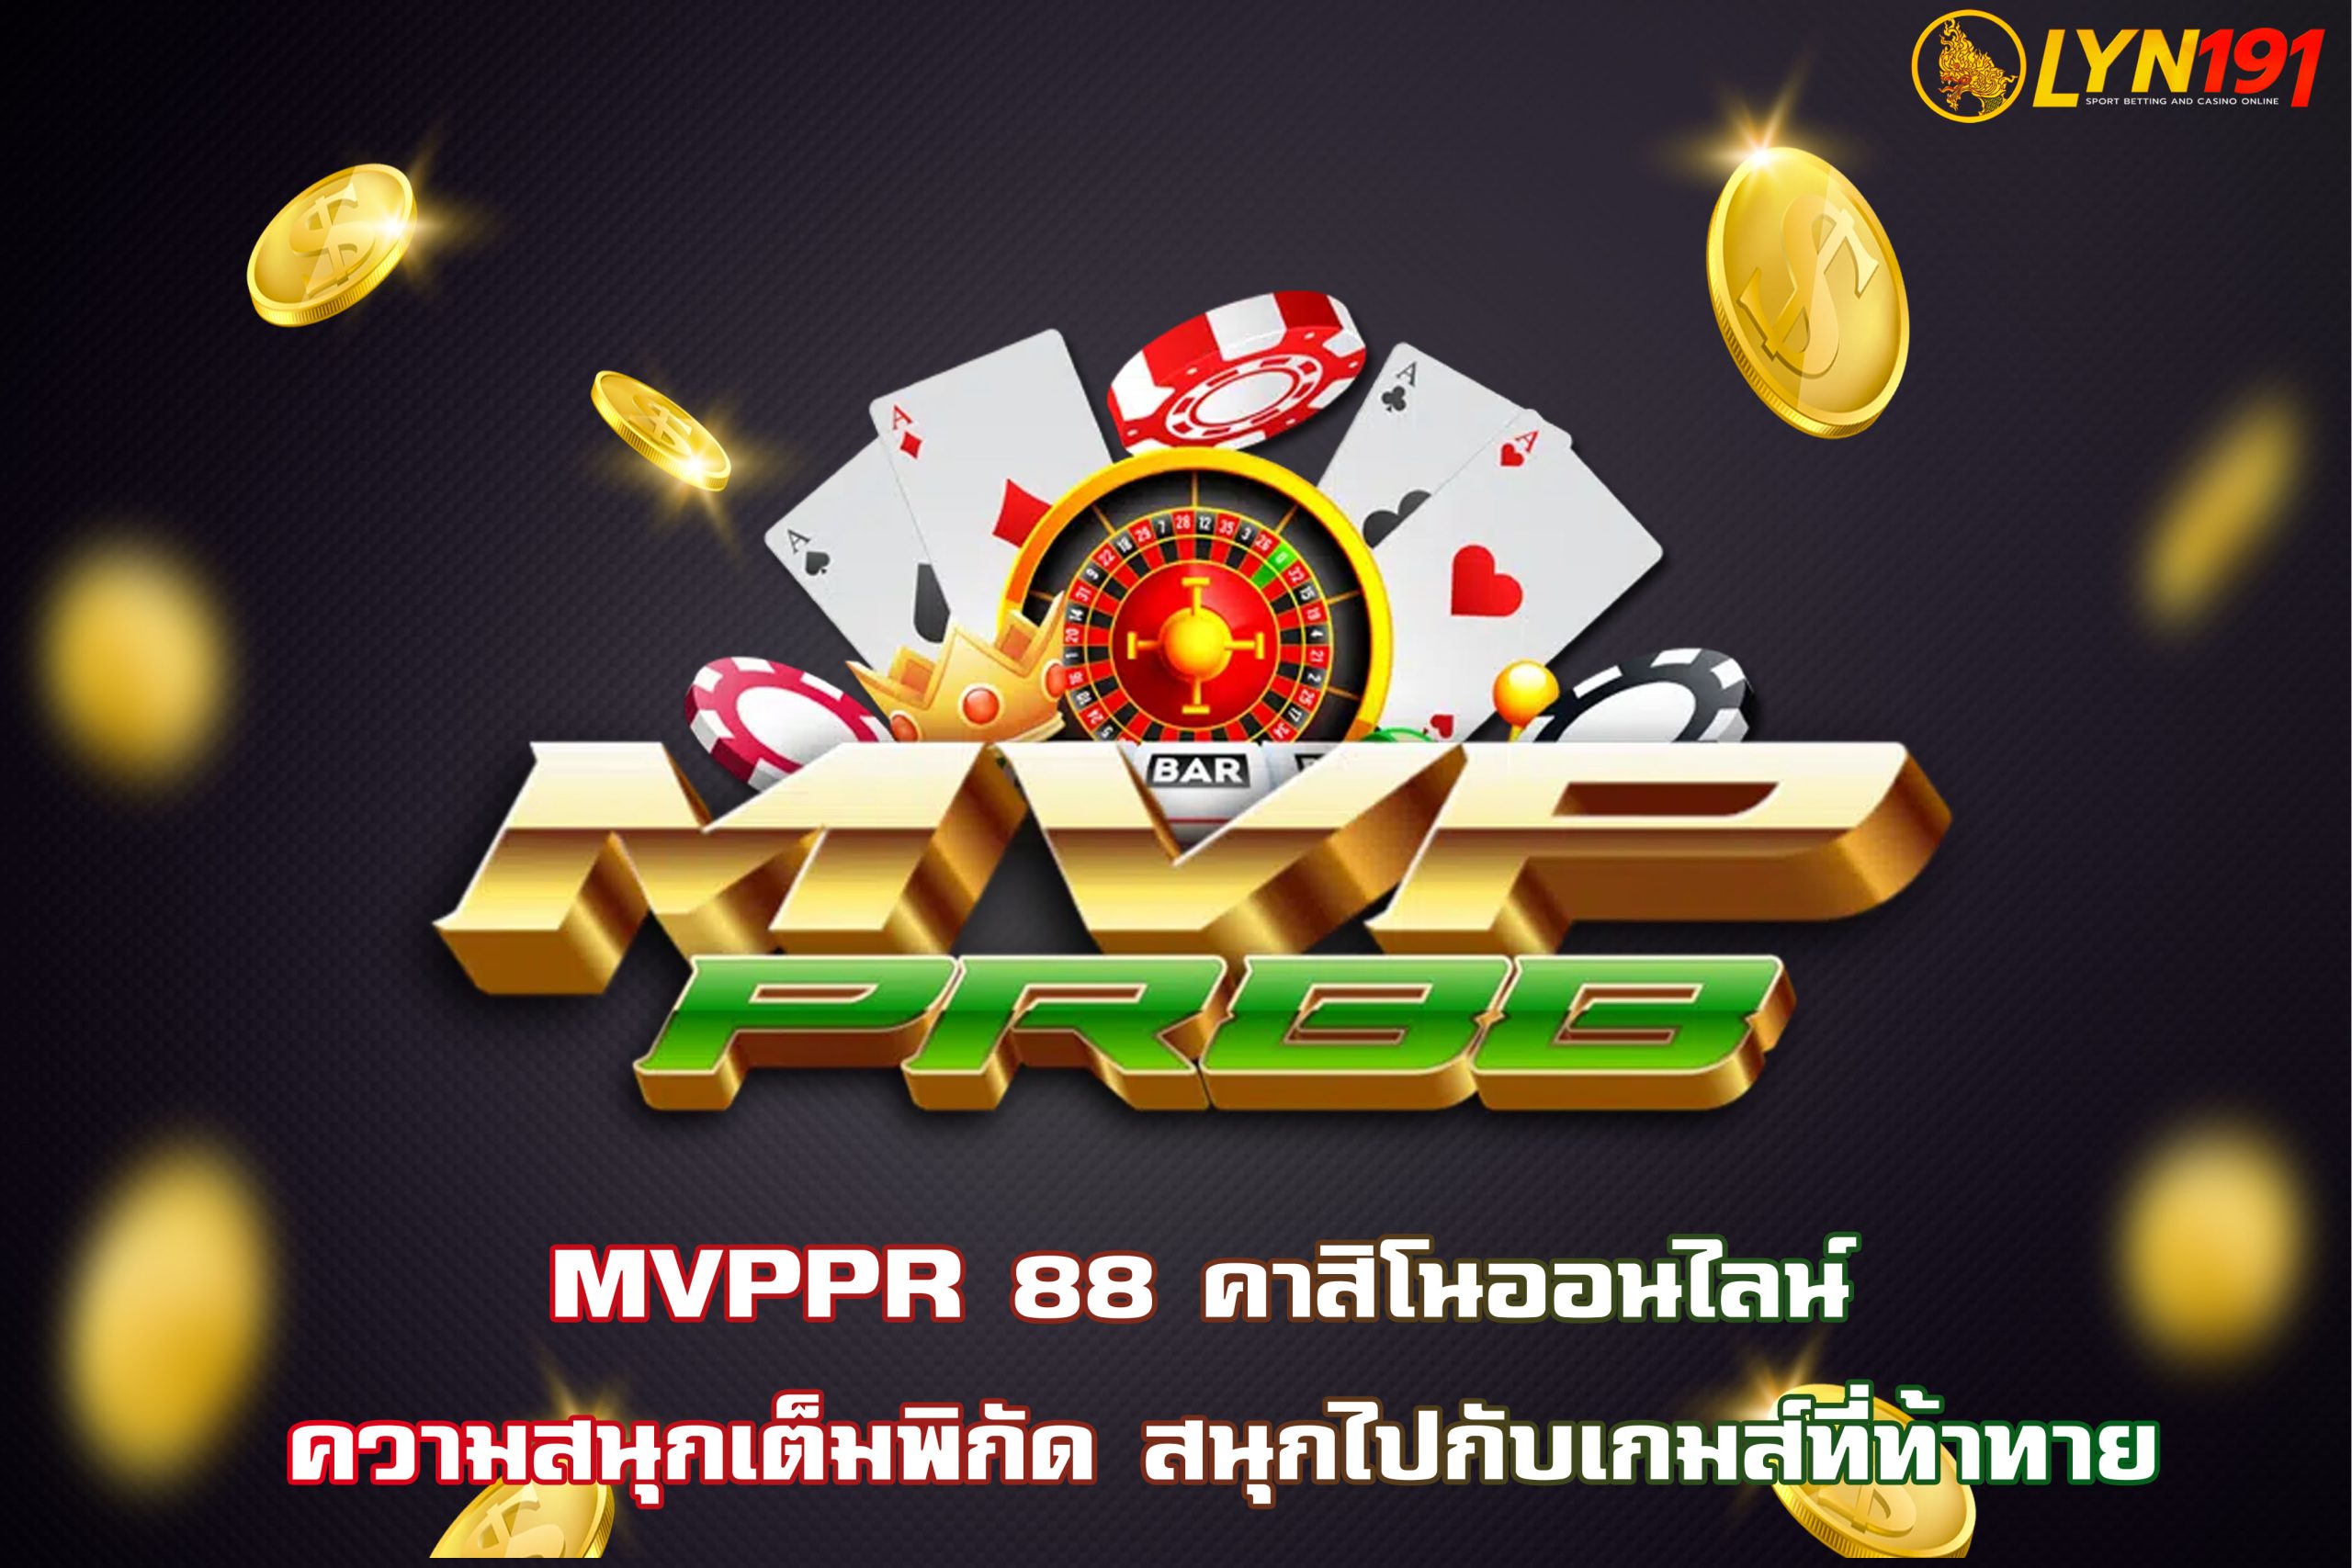 MVPPR 88